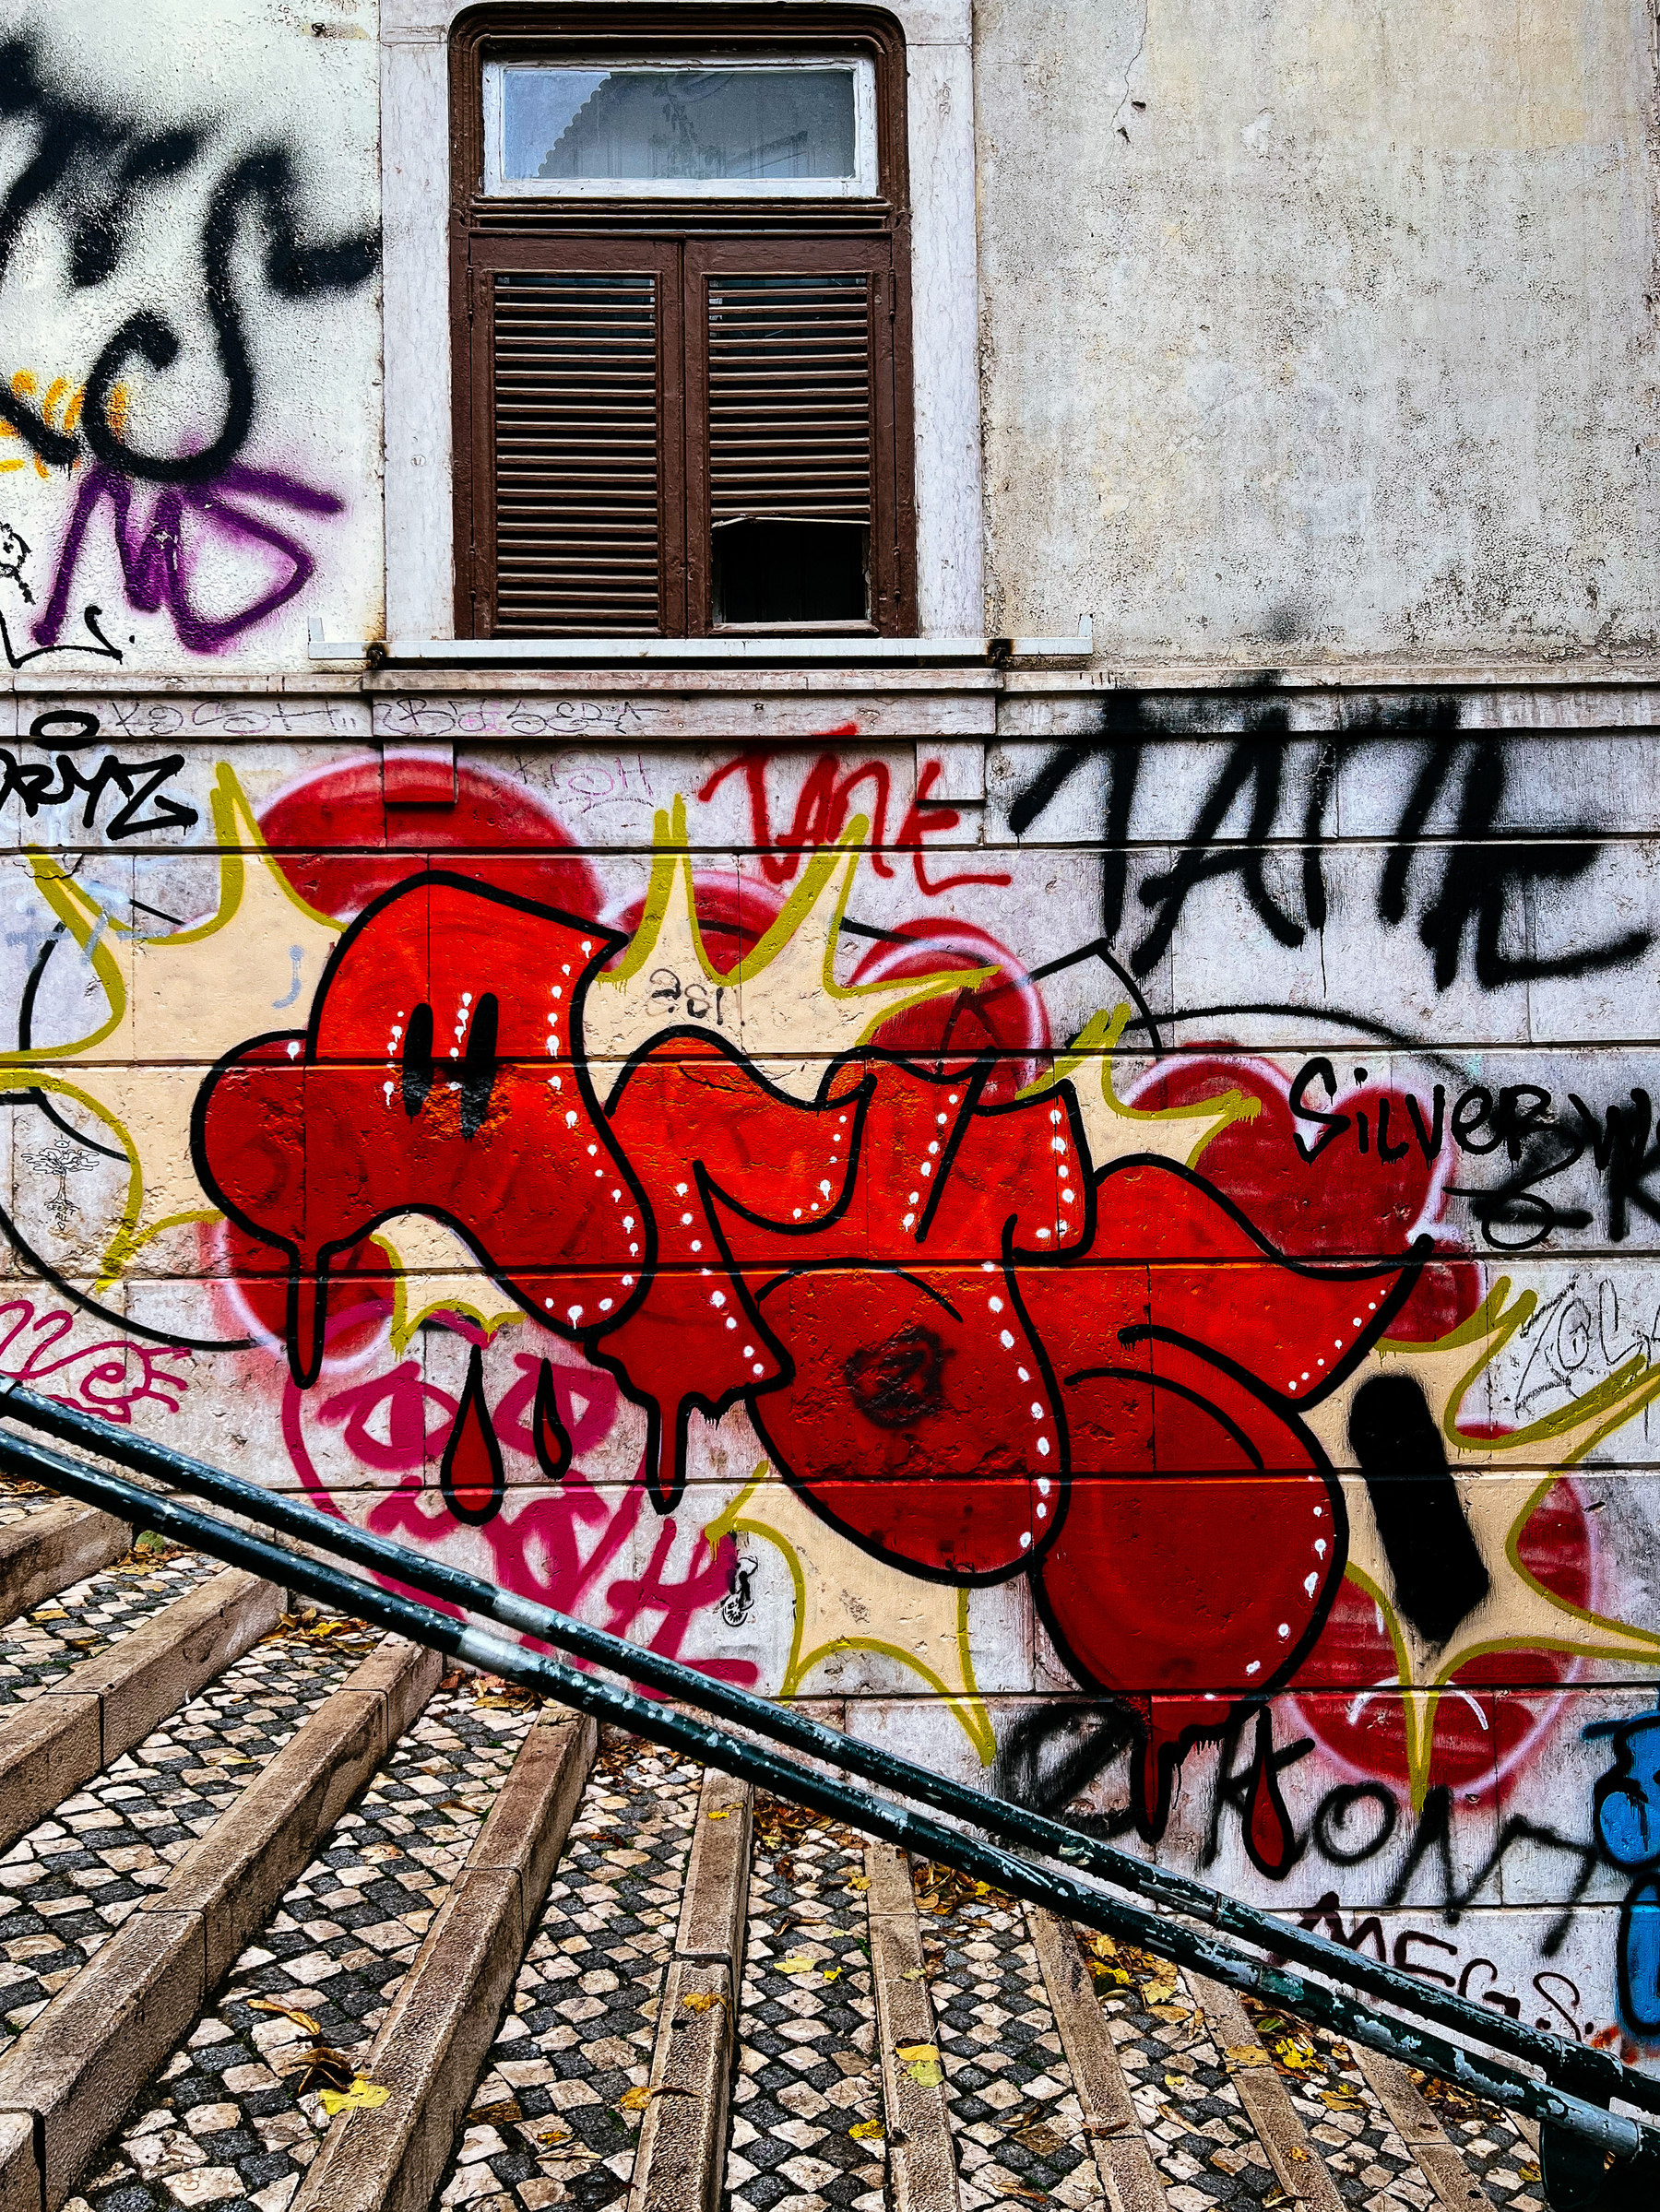 Graffiti, a tag, on a wall. 